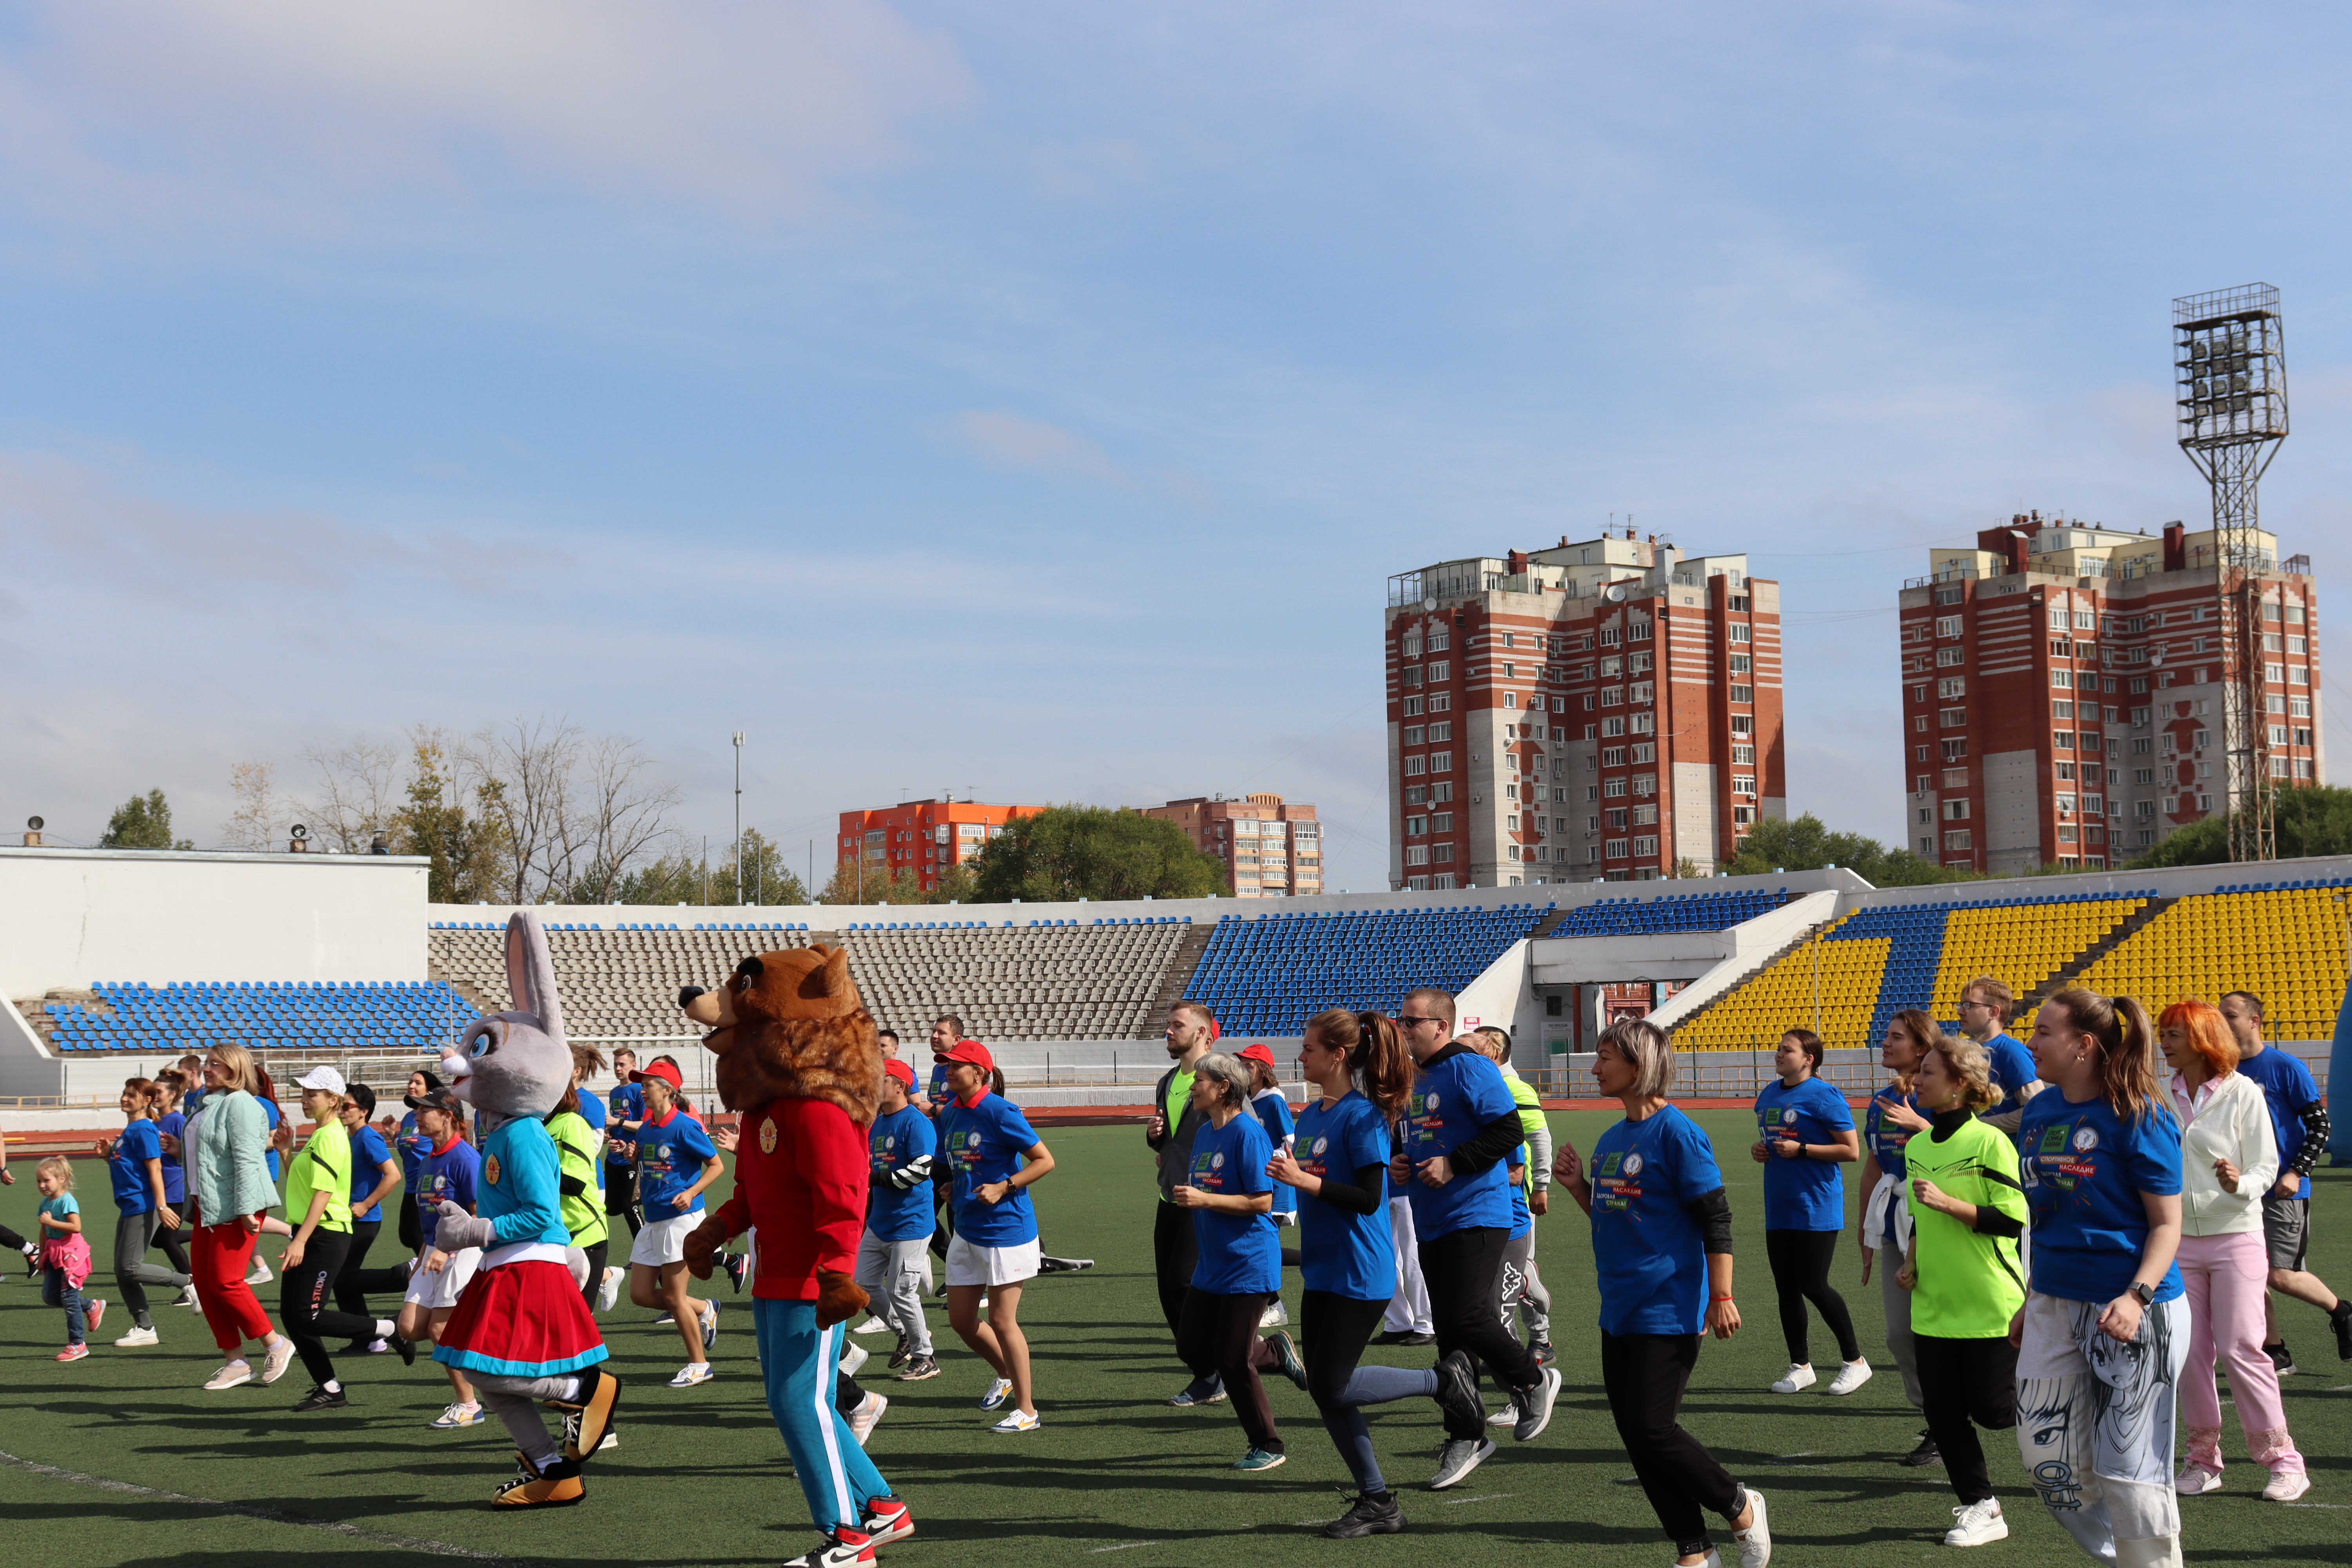  В Амурской области состоялся спортивный фестиваль «Осенний ДВИЖ» в рамках II этапа Всероссийского проекта "Спортивное наследие-здоровая страна!"